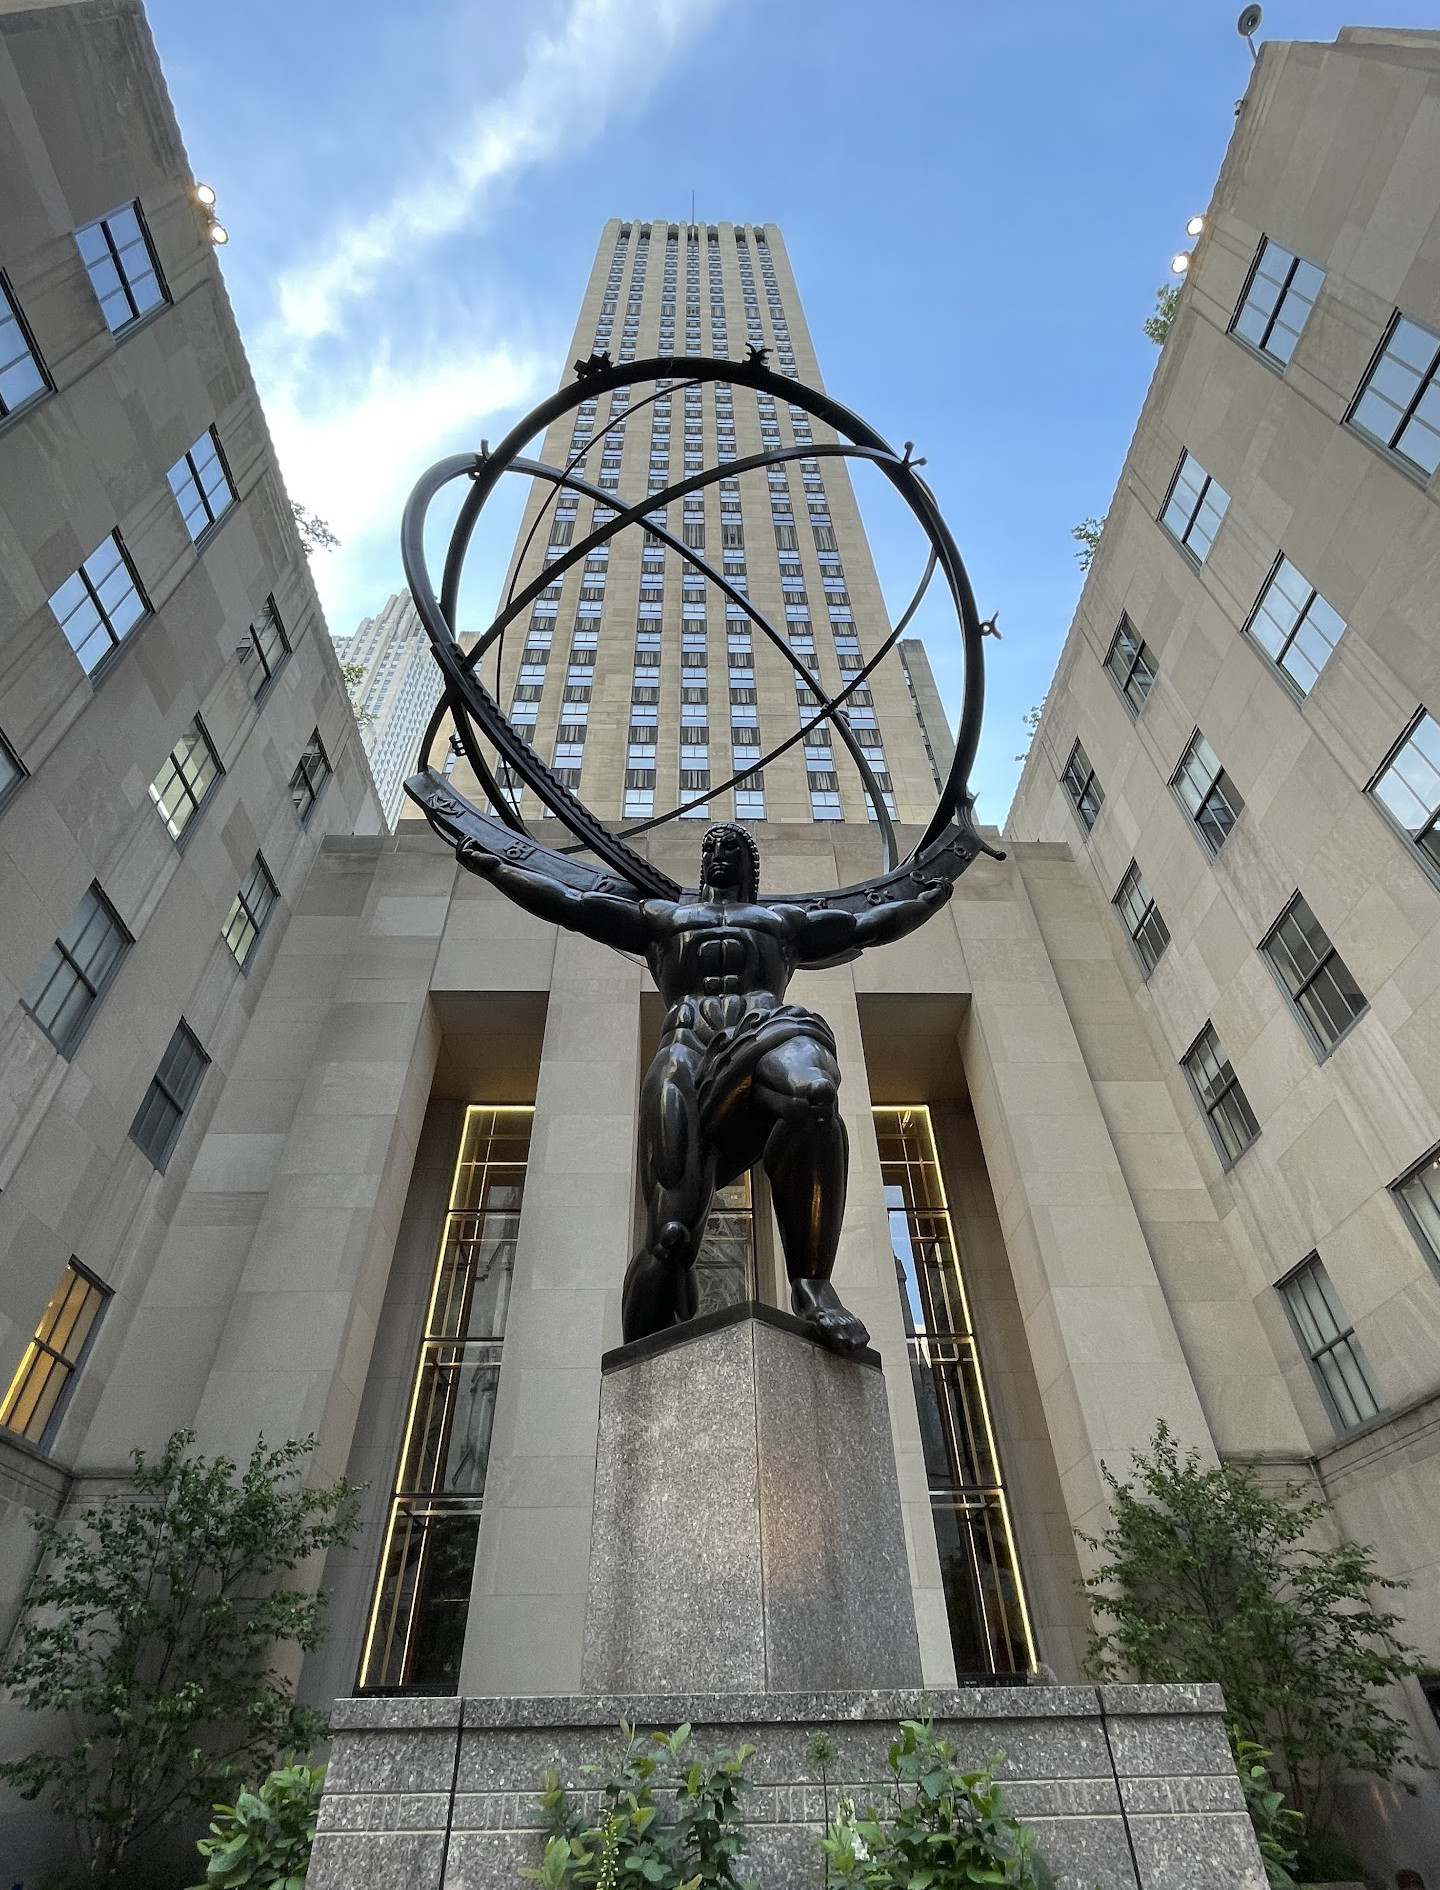 Escultura De Atlas Rockefeller Center 5ta Ave